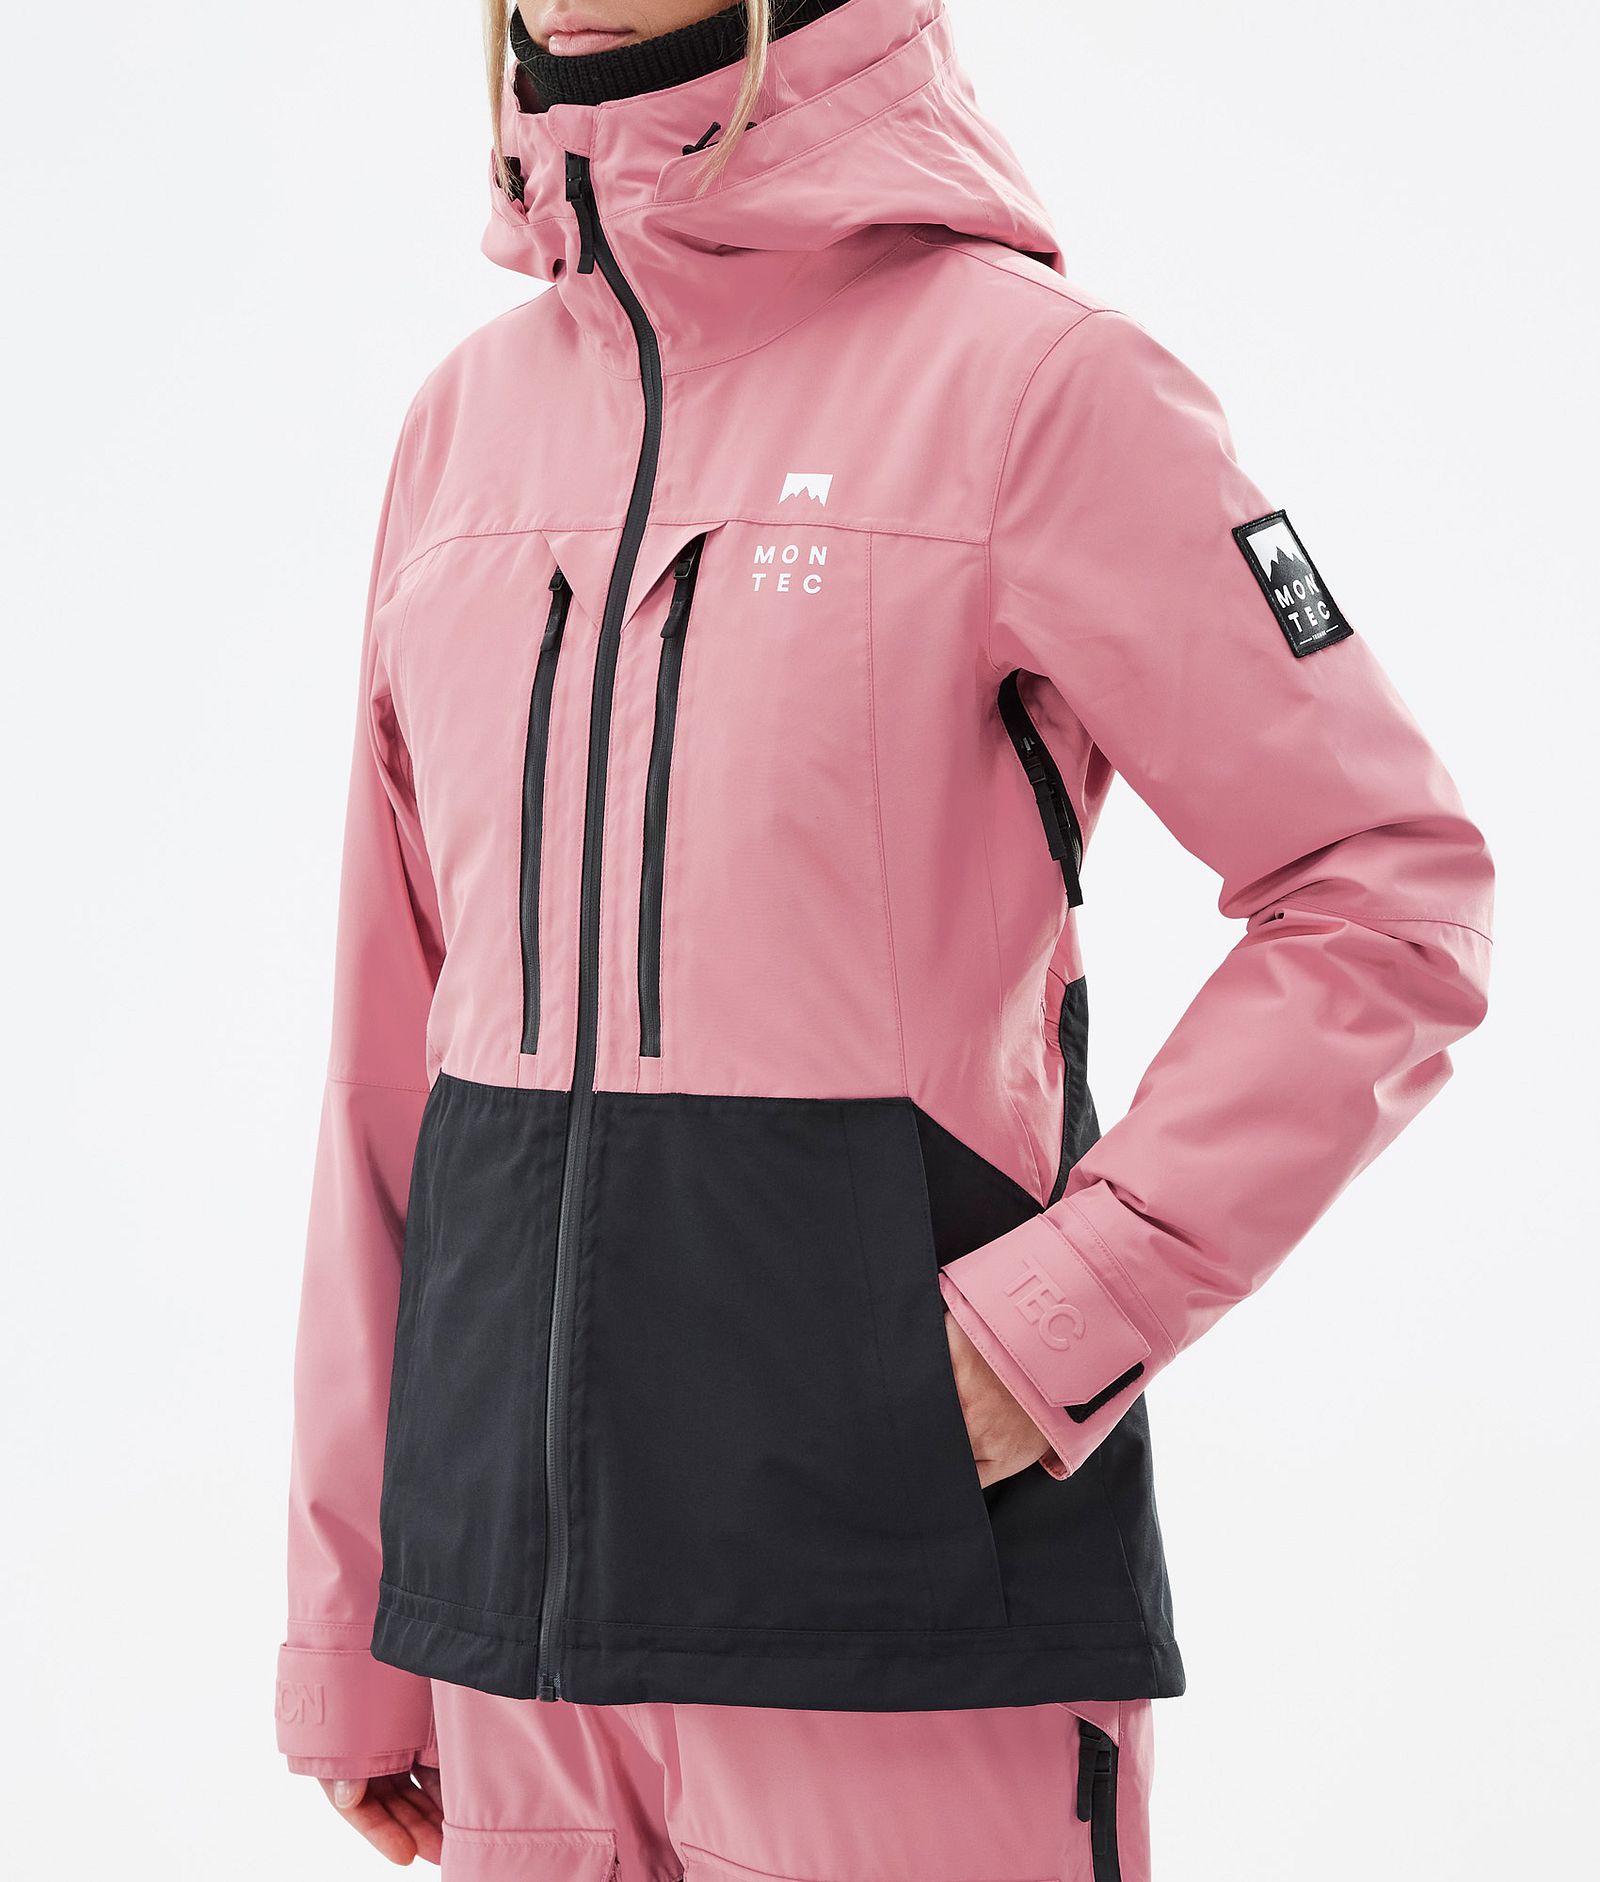 Montec Moss W Ski Jacket Women Pink/Black, Image 8 of 10